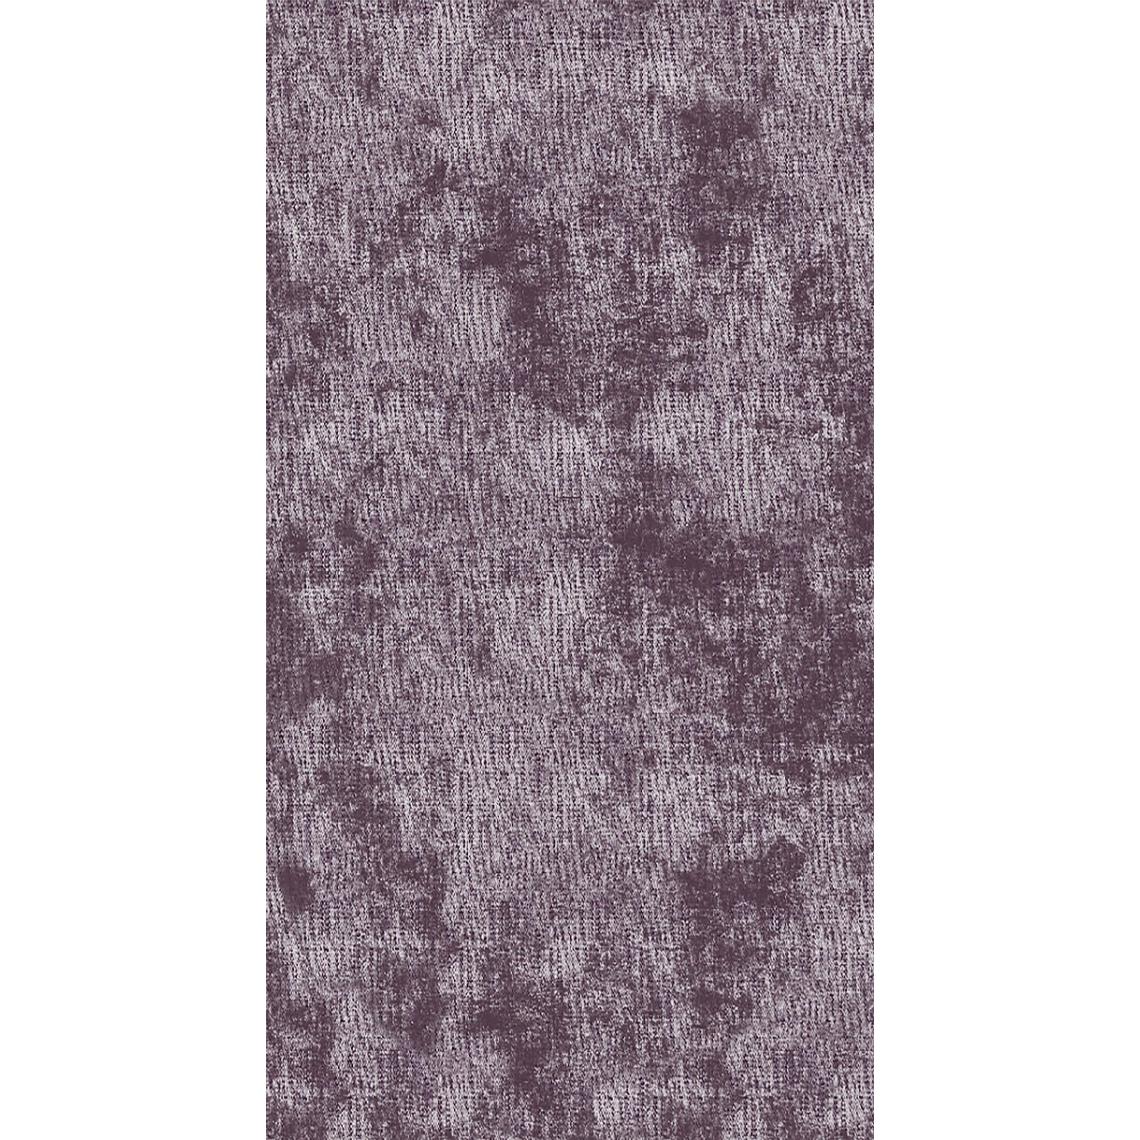 Homemania - HOMEMANIA Tapis Imprimé Purple 2 - Résumé - Décoration de Maison - antidérapants - Pour Salon, séjour, chambre à coucher - Multicolore en Polyester, Coton, 100 x 150 cm - Tapis